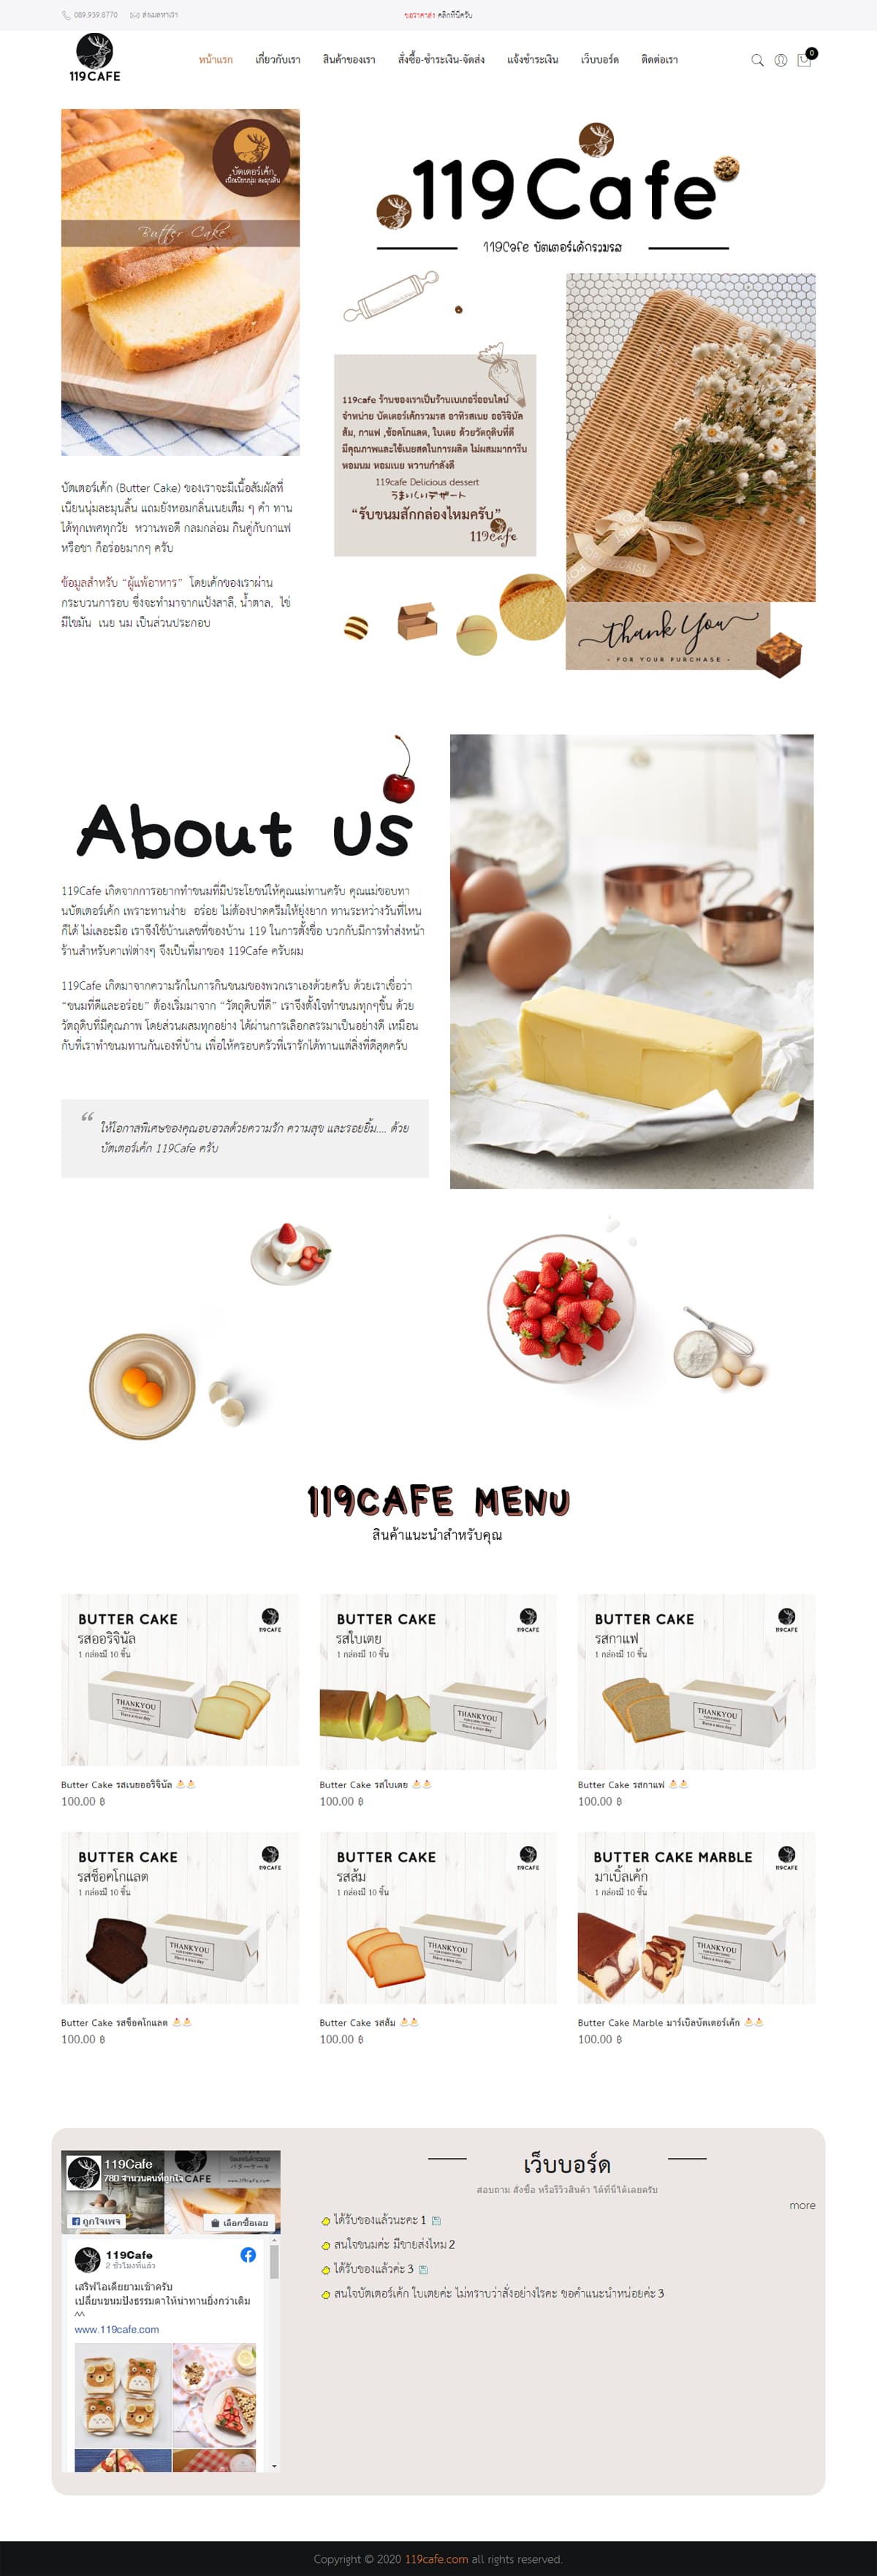 บ้านทำเว็บ รับทำเว็บไซต์ เว็บไซต์ รับทำเว็บขายอาหาร รับทำเว็บขายขนม รับทำเว็บขายของแห้งของฝาก